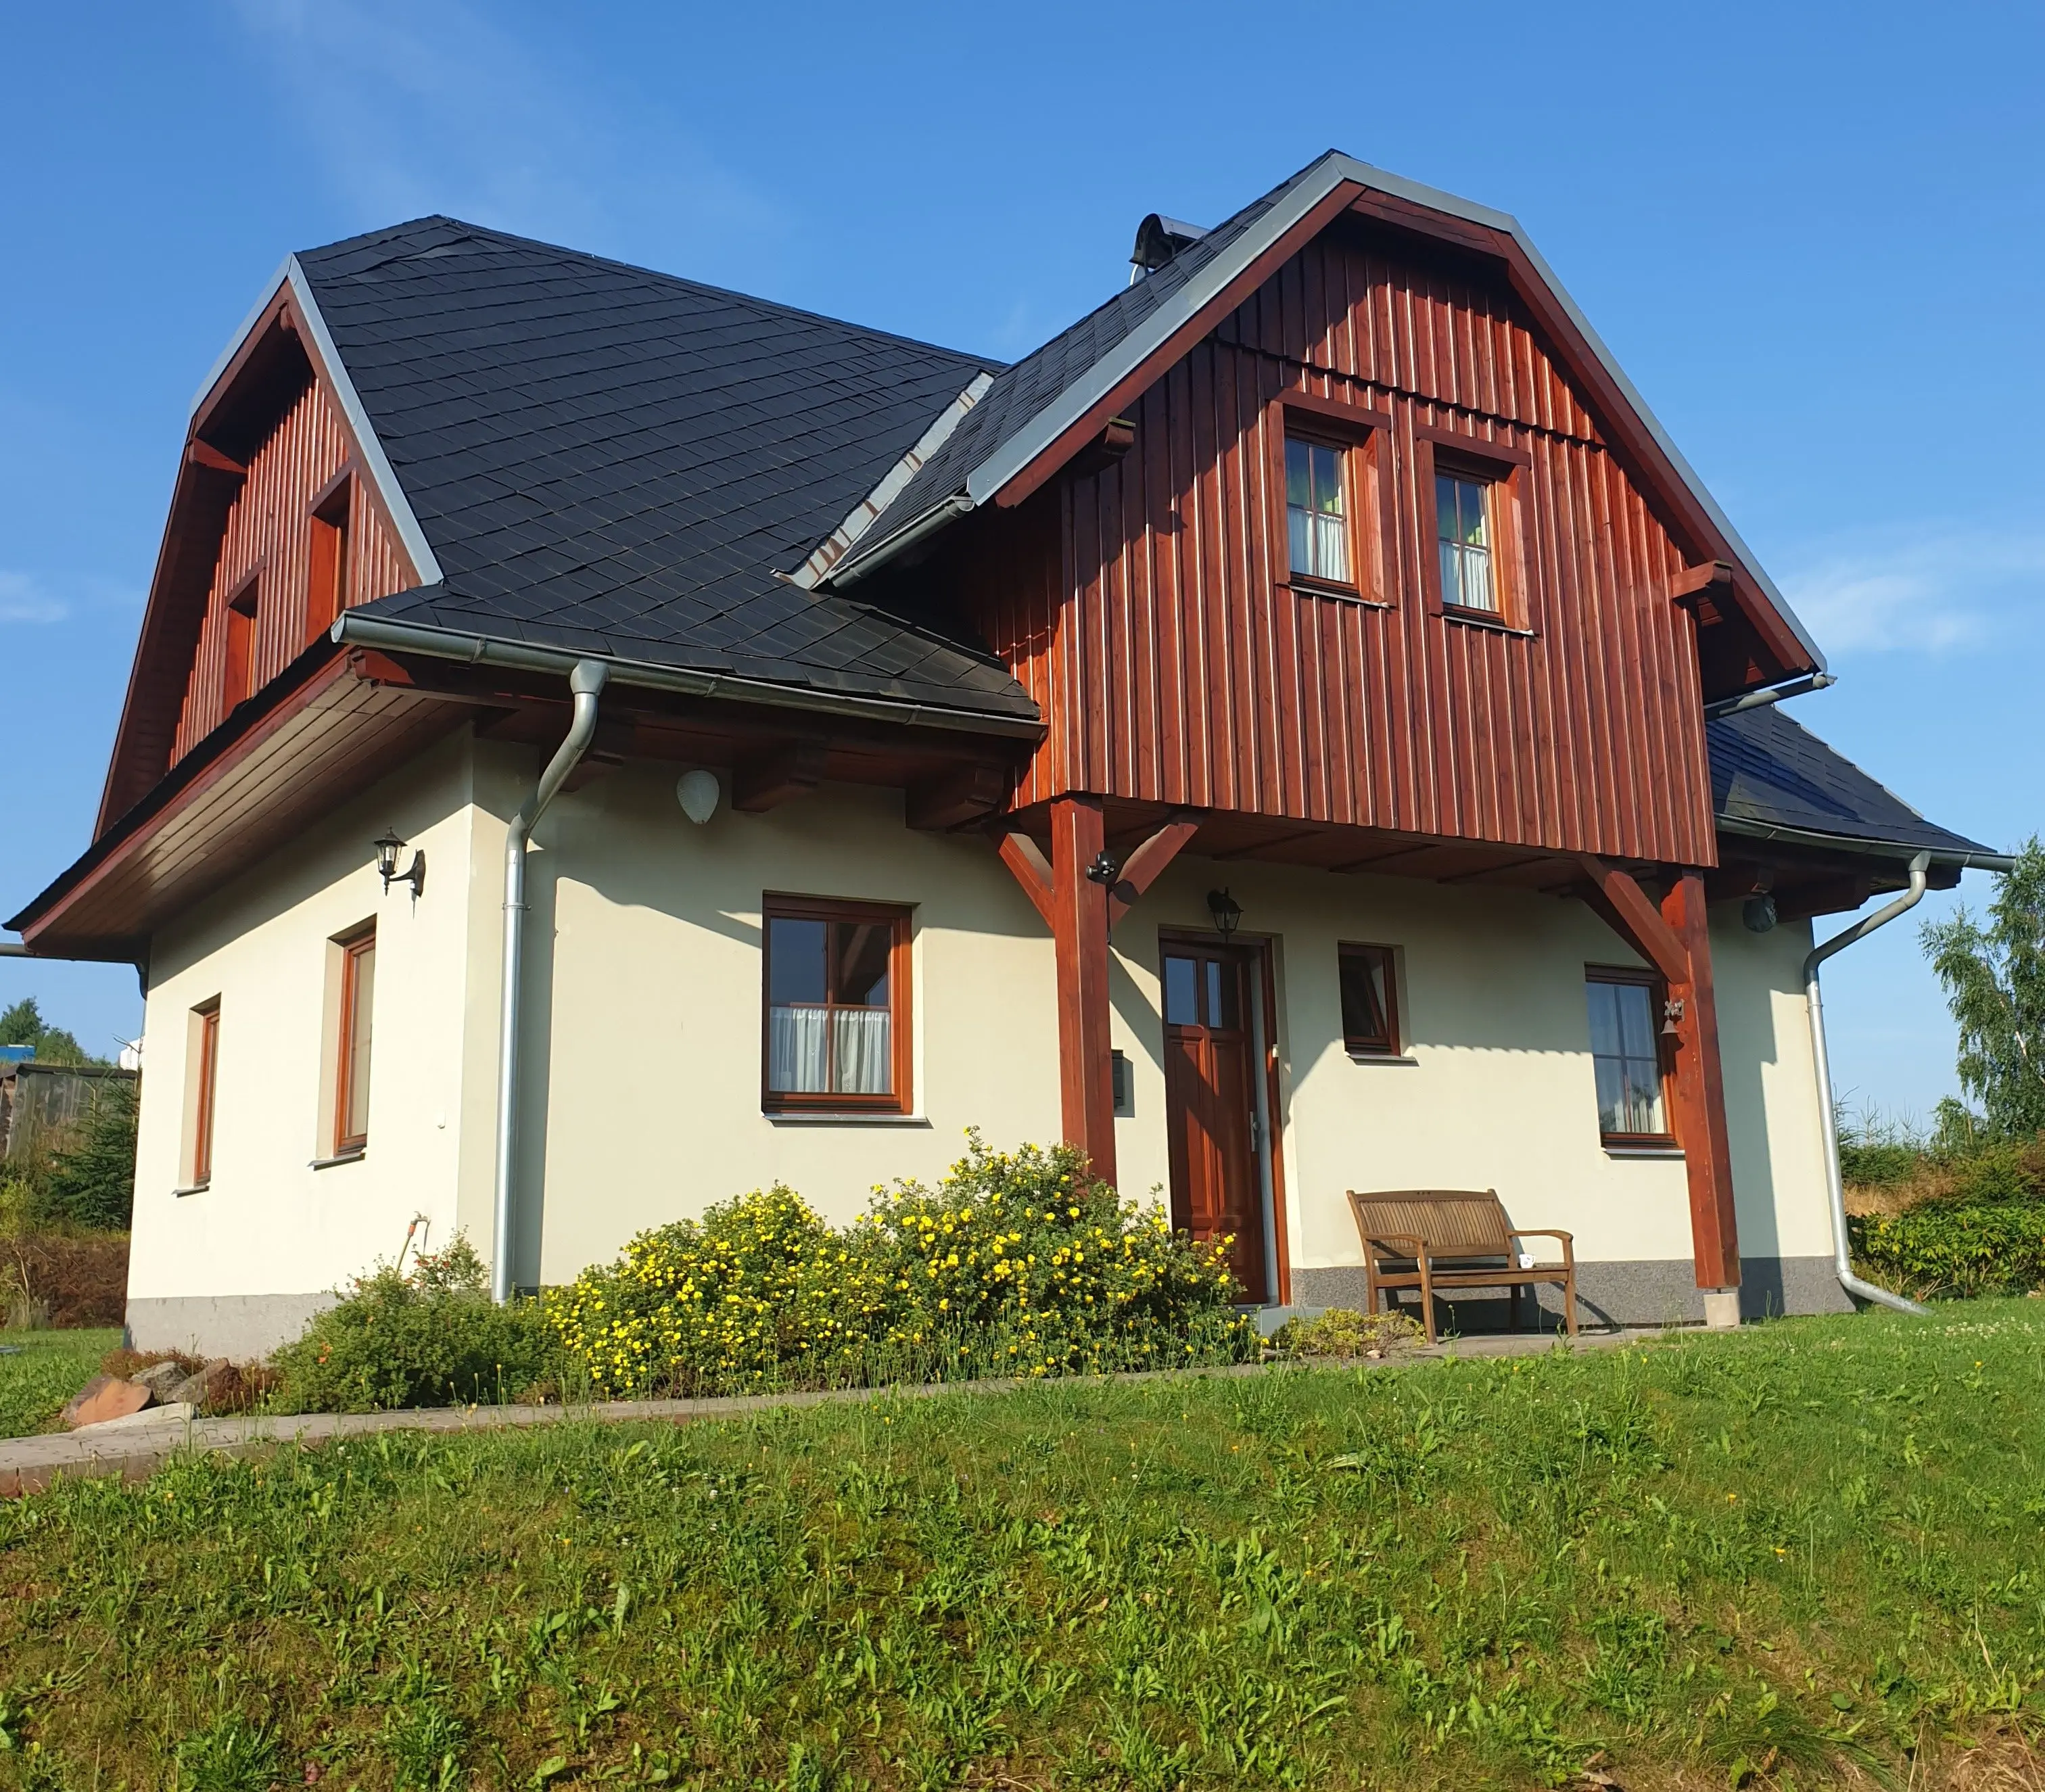 Ruim vakantiehuis, 4 slaapkamers, op gewilde locatie nabij Trutnov te koop in Tsjechie (onder Reuzengebergte).